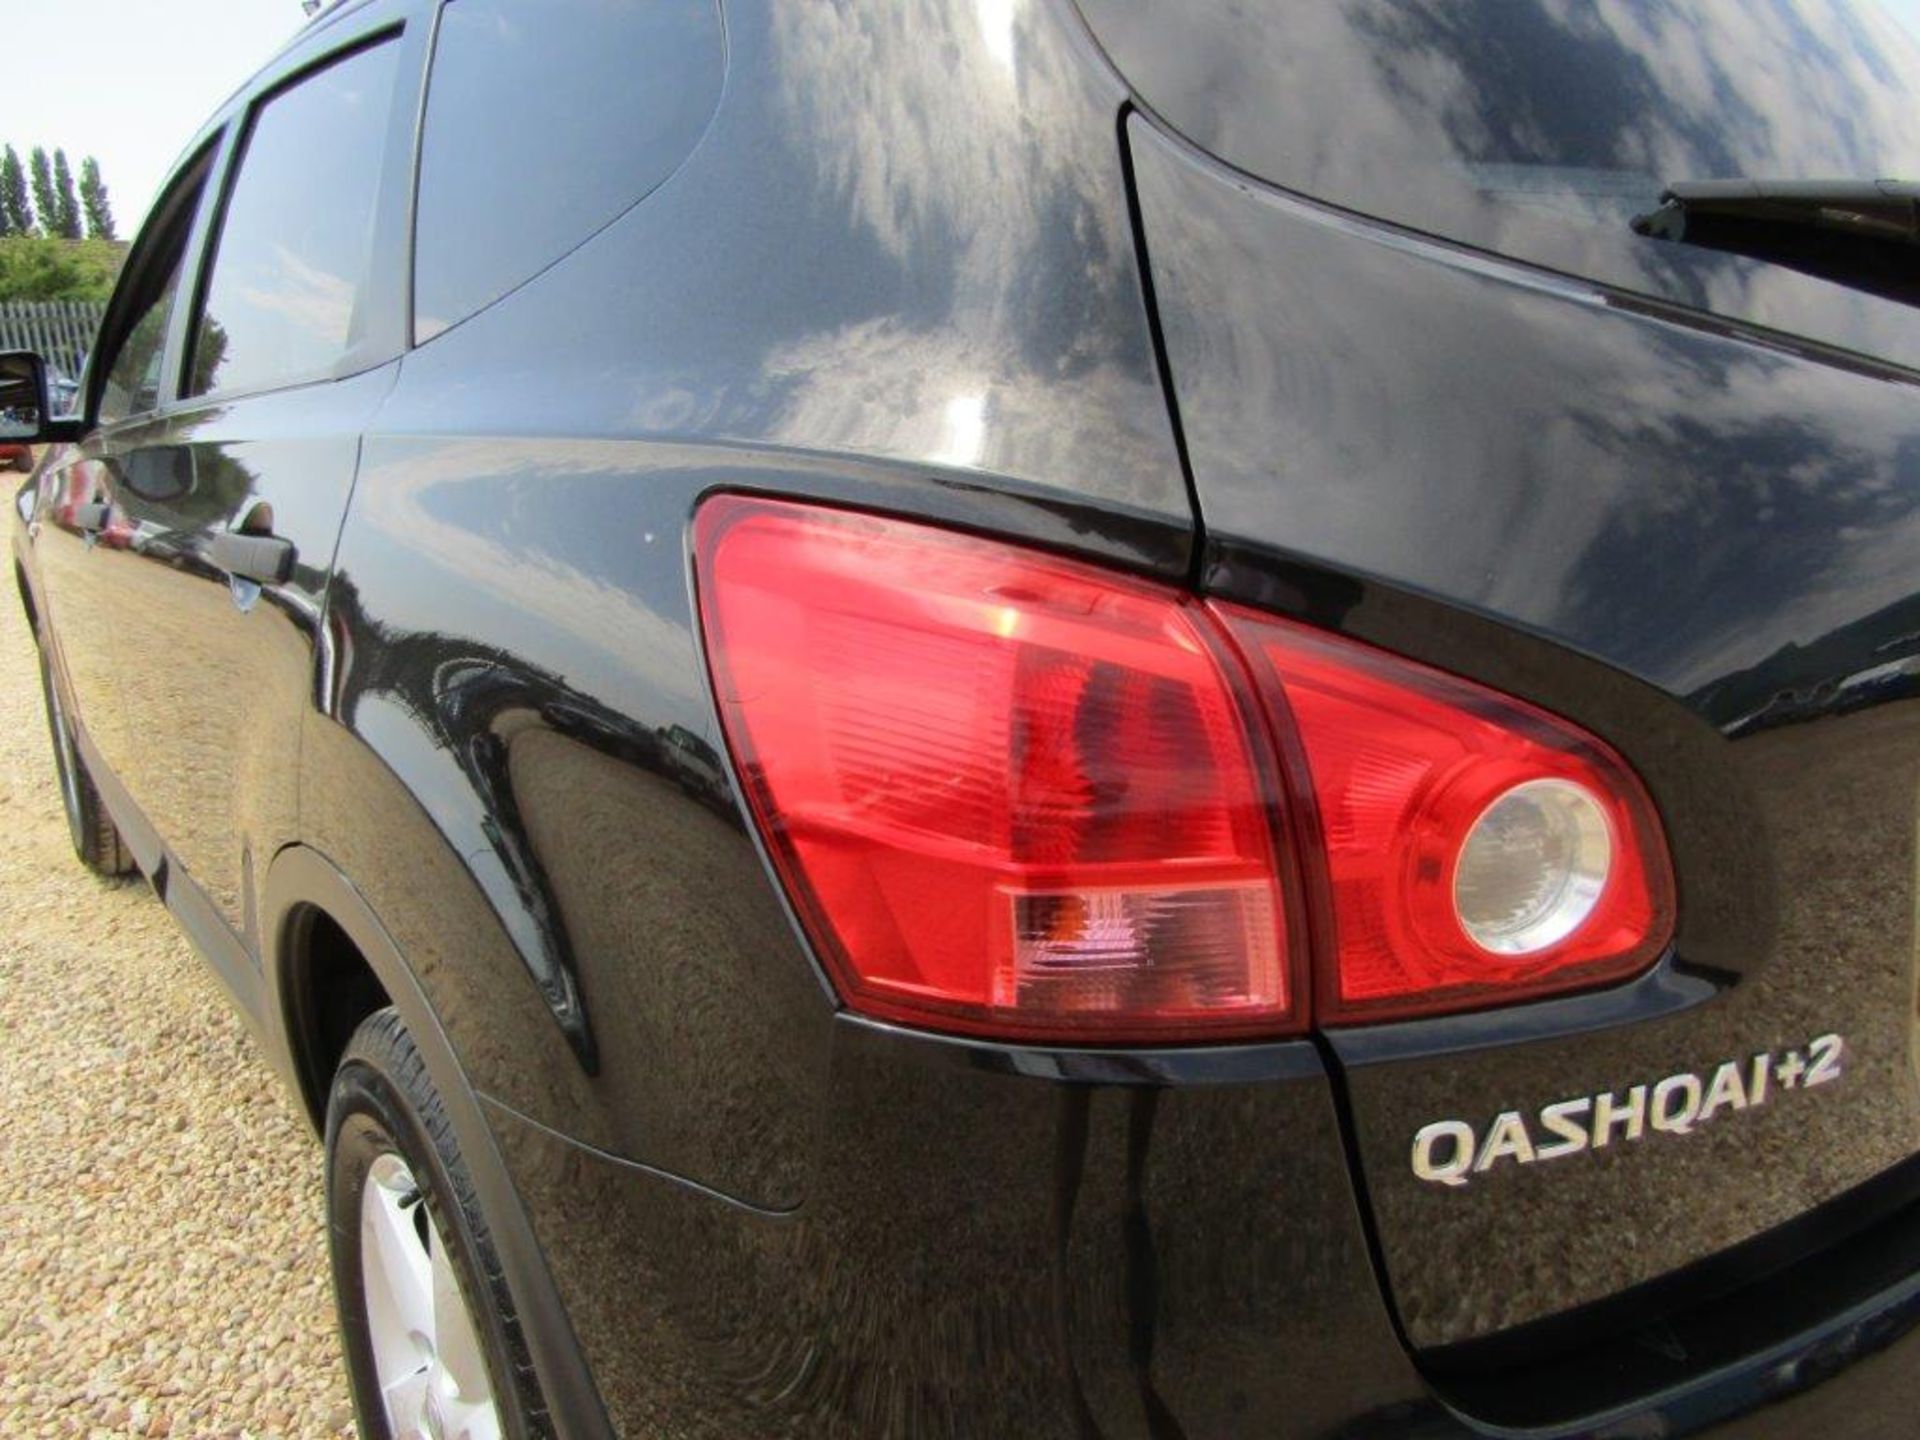 09 09 Nissan Qashqai Visia +2 - Image 9 of 21